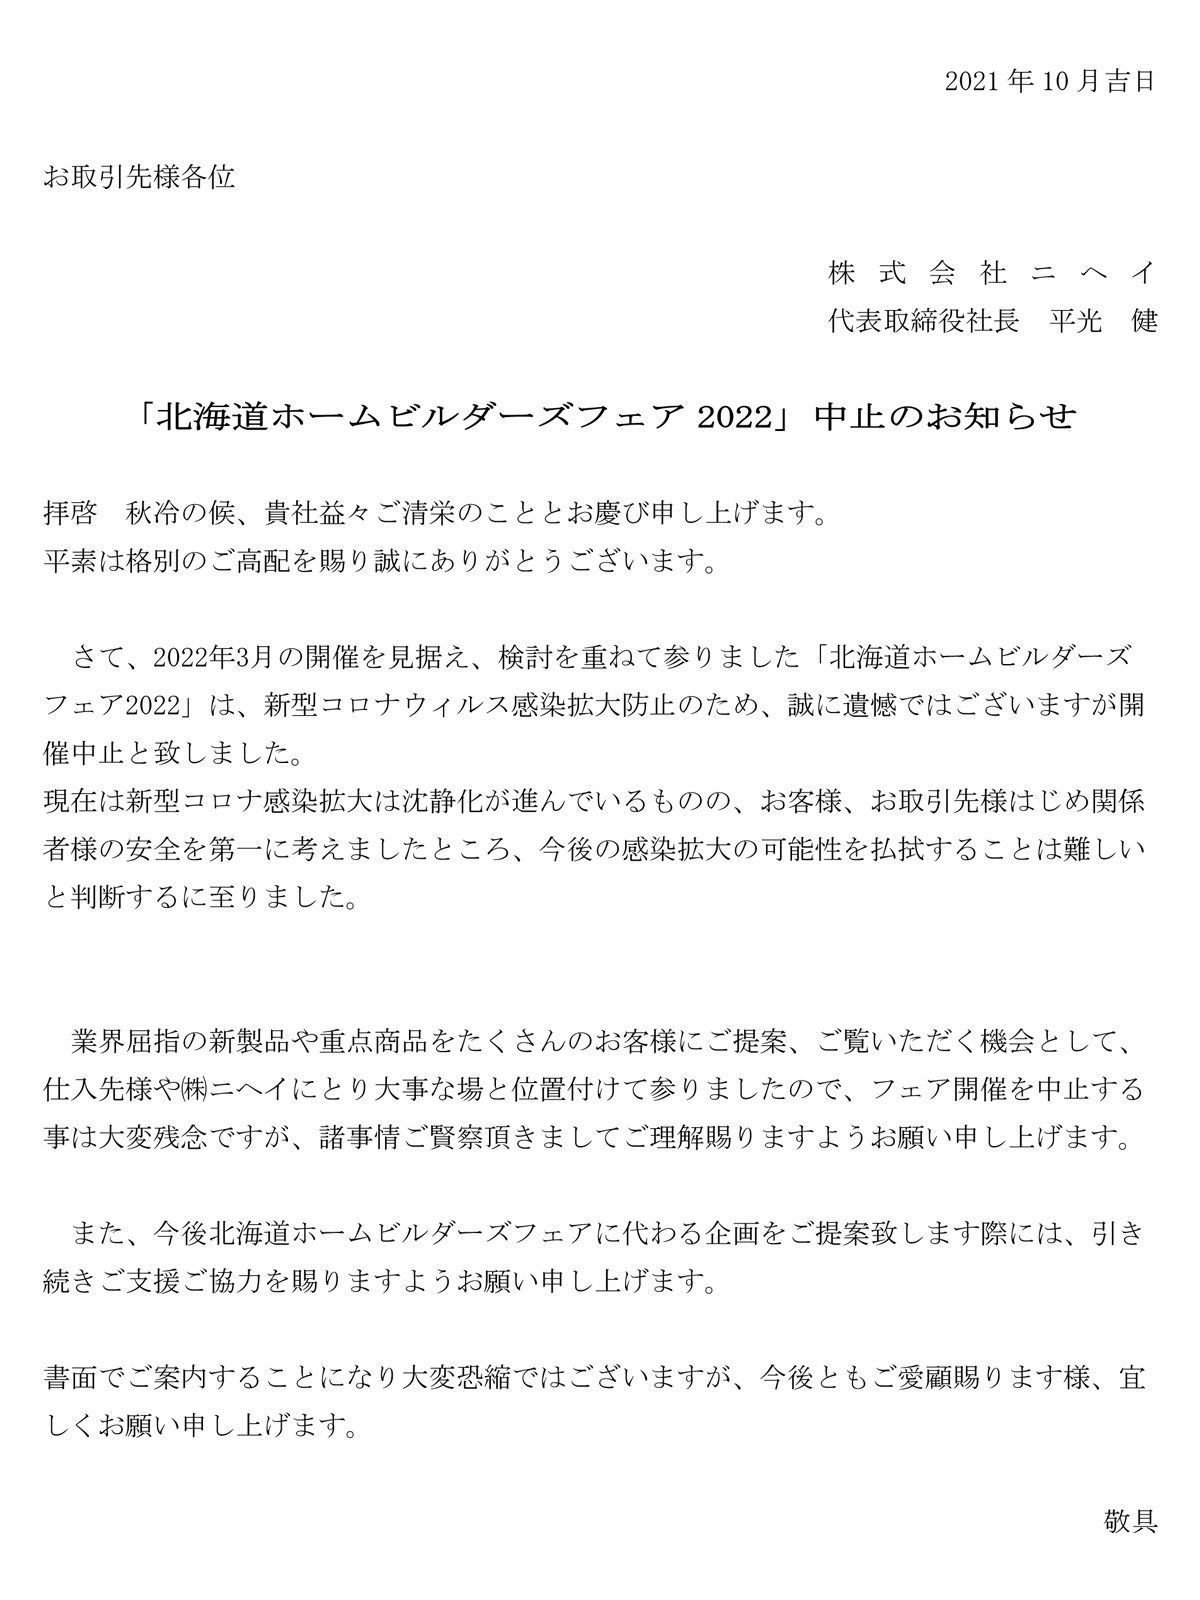 「北海道ホームビルダーズフェア2021」開催中止のお知らせ